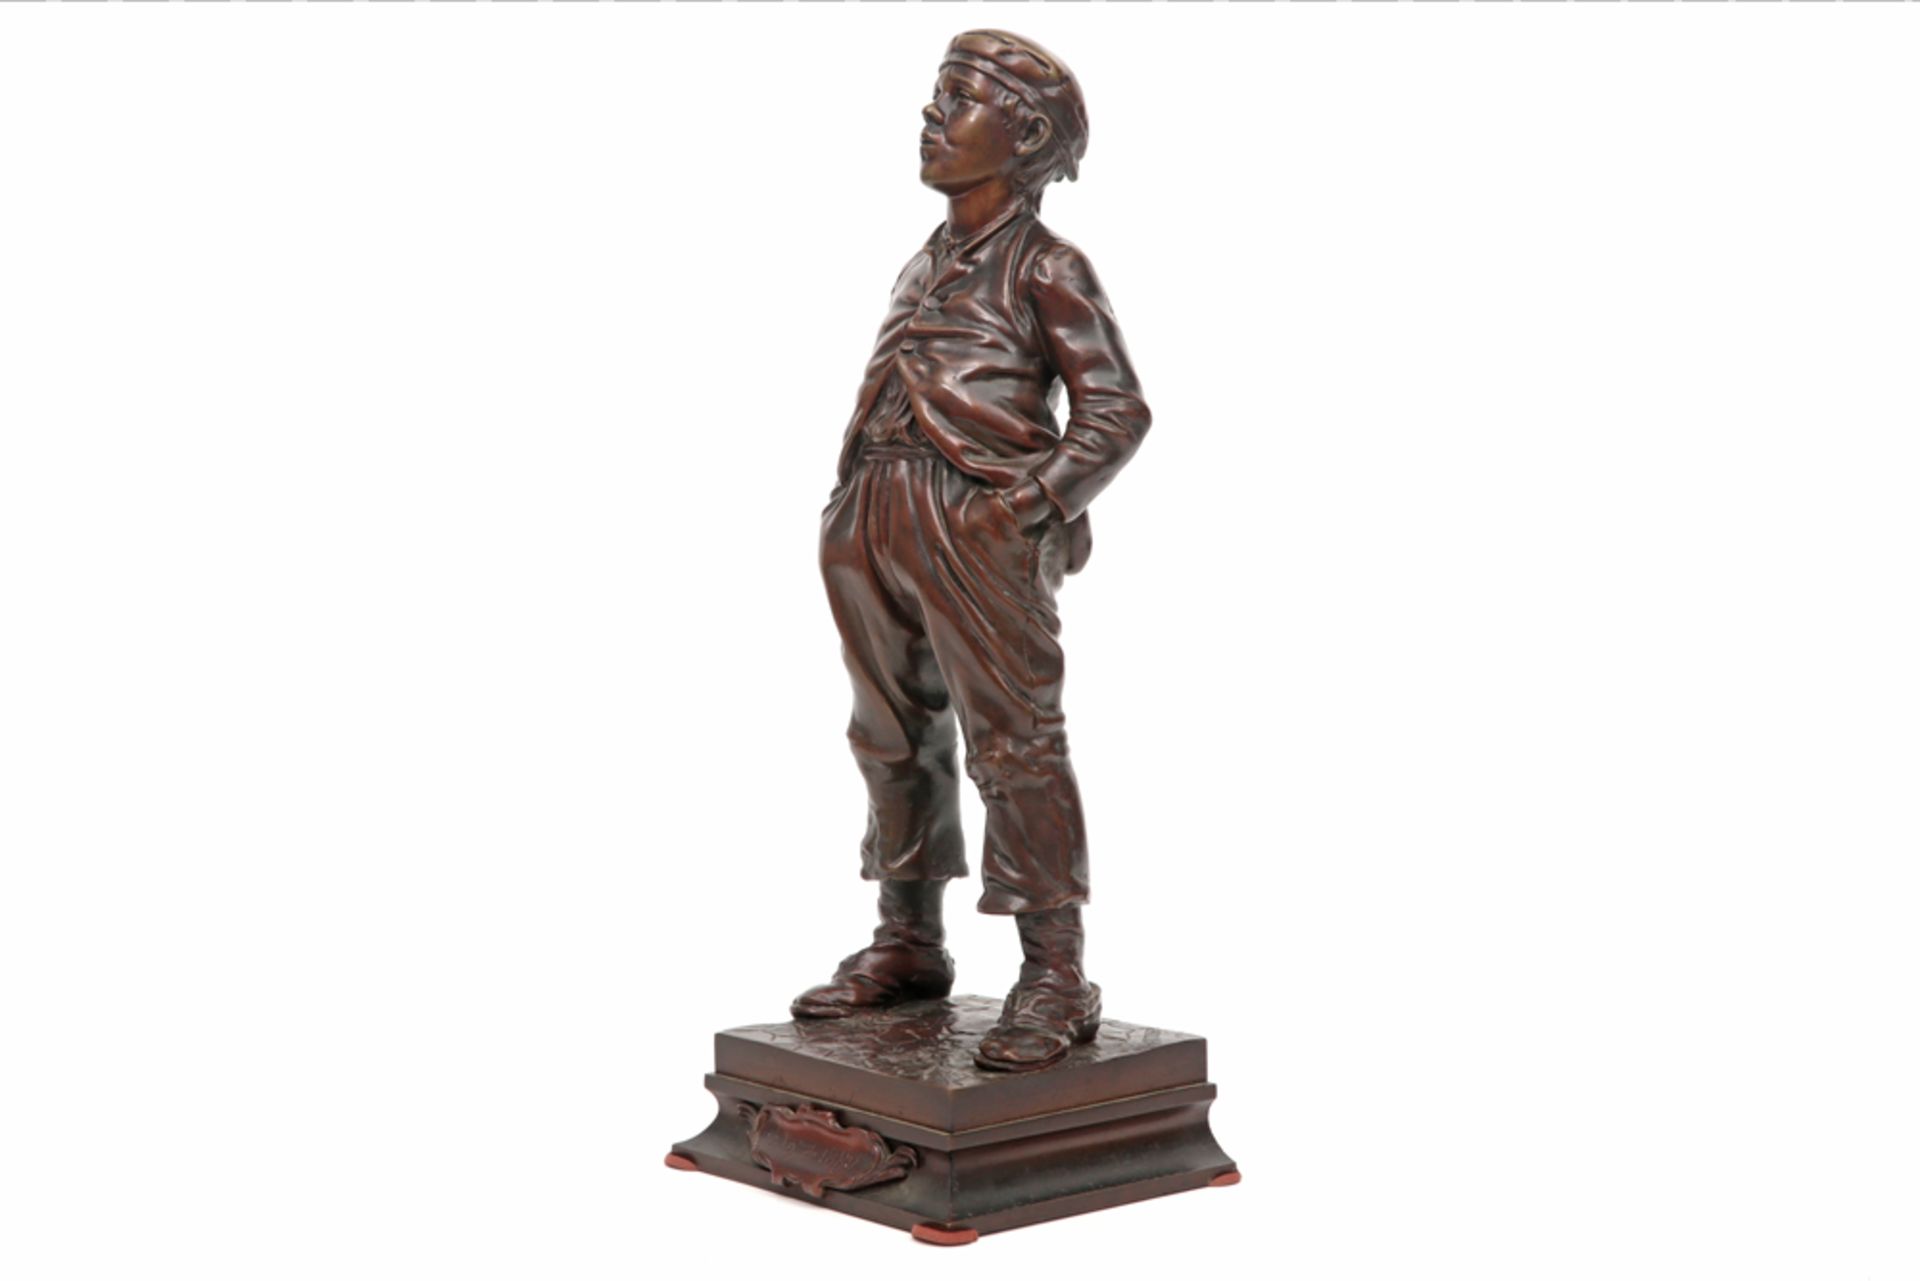 HERTZBERG HALFDAN (1857 - 1890) sculptuur in brons : "Fluitende jongen" (Le jeune mousse siffleur) d - Image 2 of 5